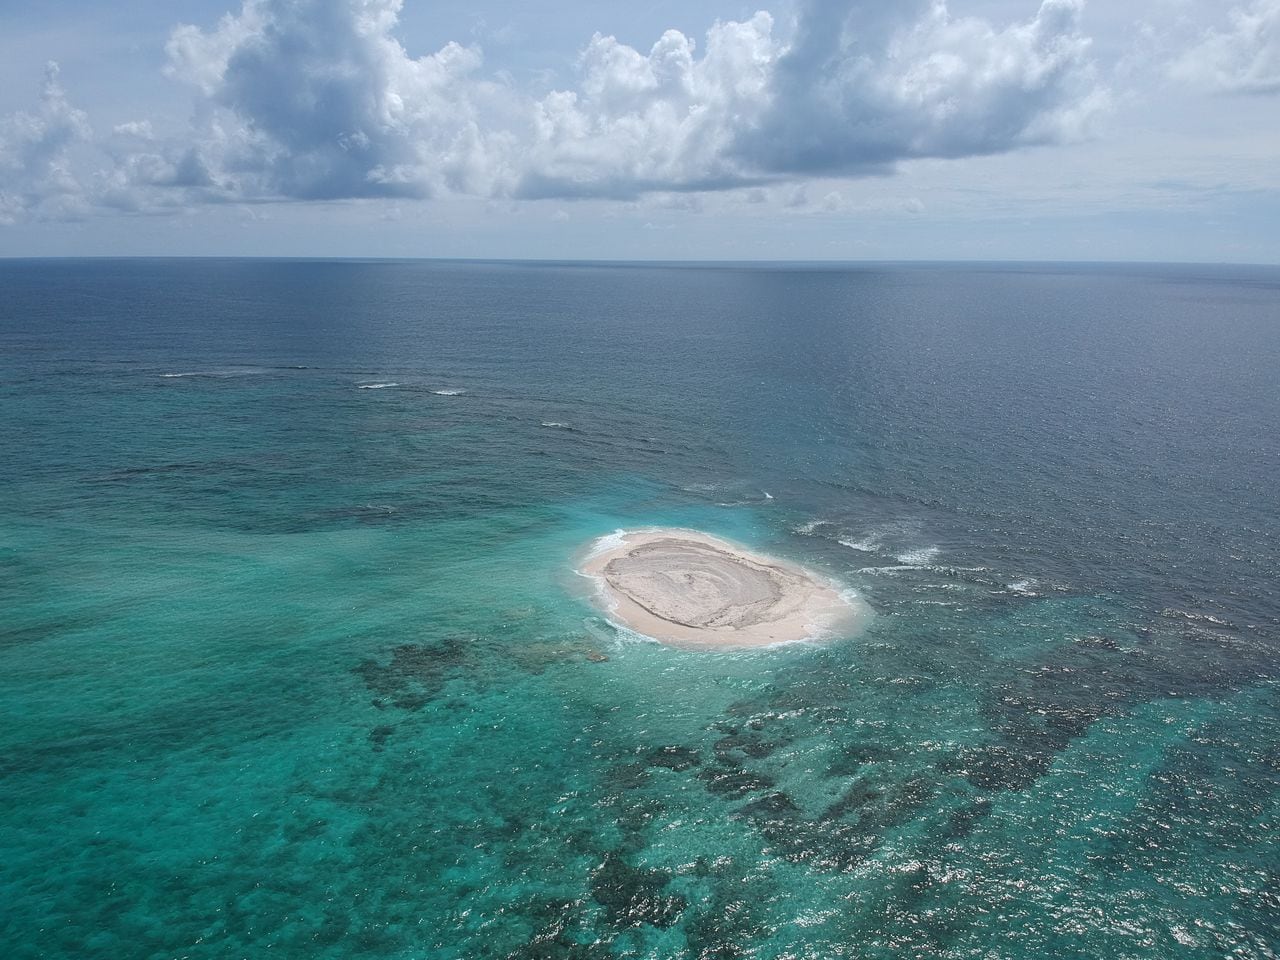 Sand Cay. Está ubicado al noreste de la isla de Serranilla. En 2008 se llevó a cabo la primera campaña de levantamiento taquimétrico y posicionamiento de los bajos, barras de arena, cabeza de coral, rocas, por parte de la Armada Nacional.